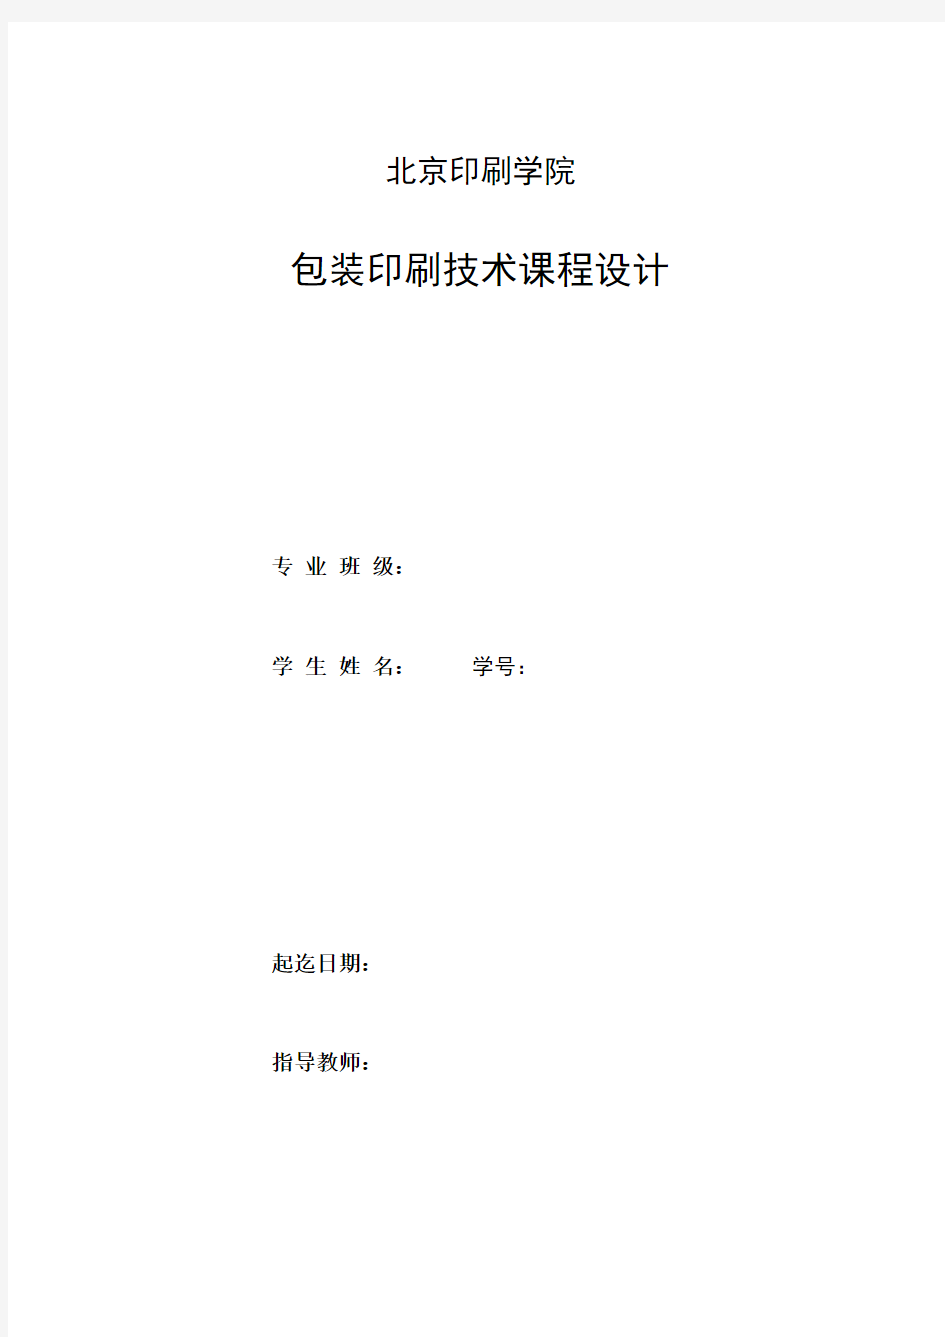 北京印刷学院包装印刷技术课程设计